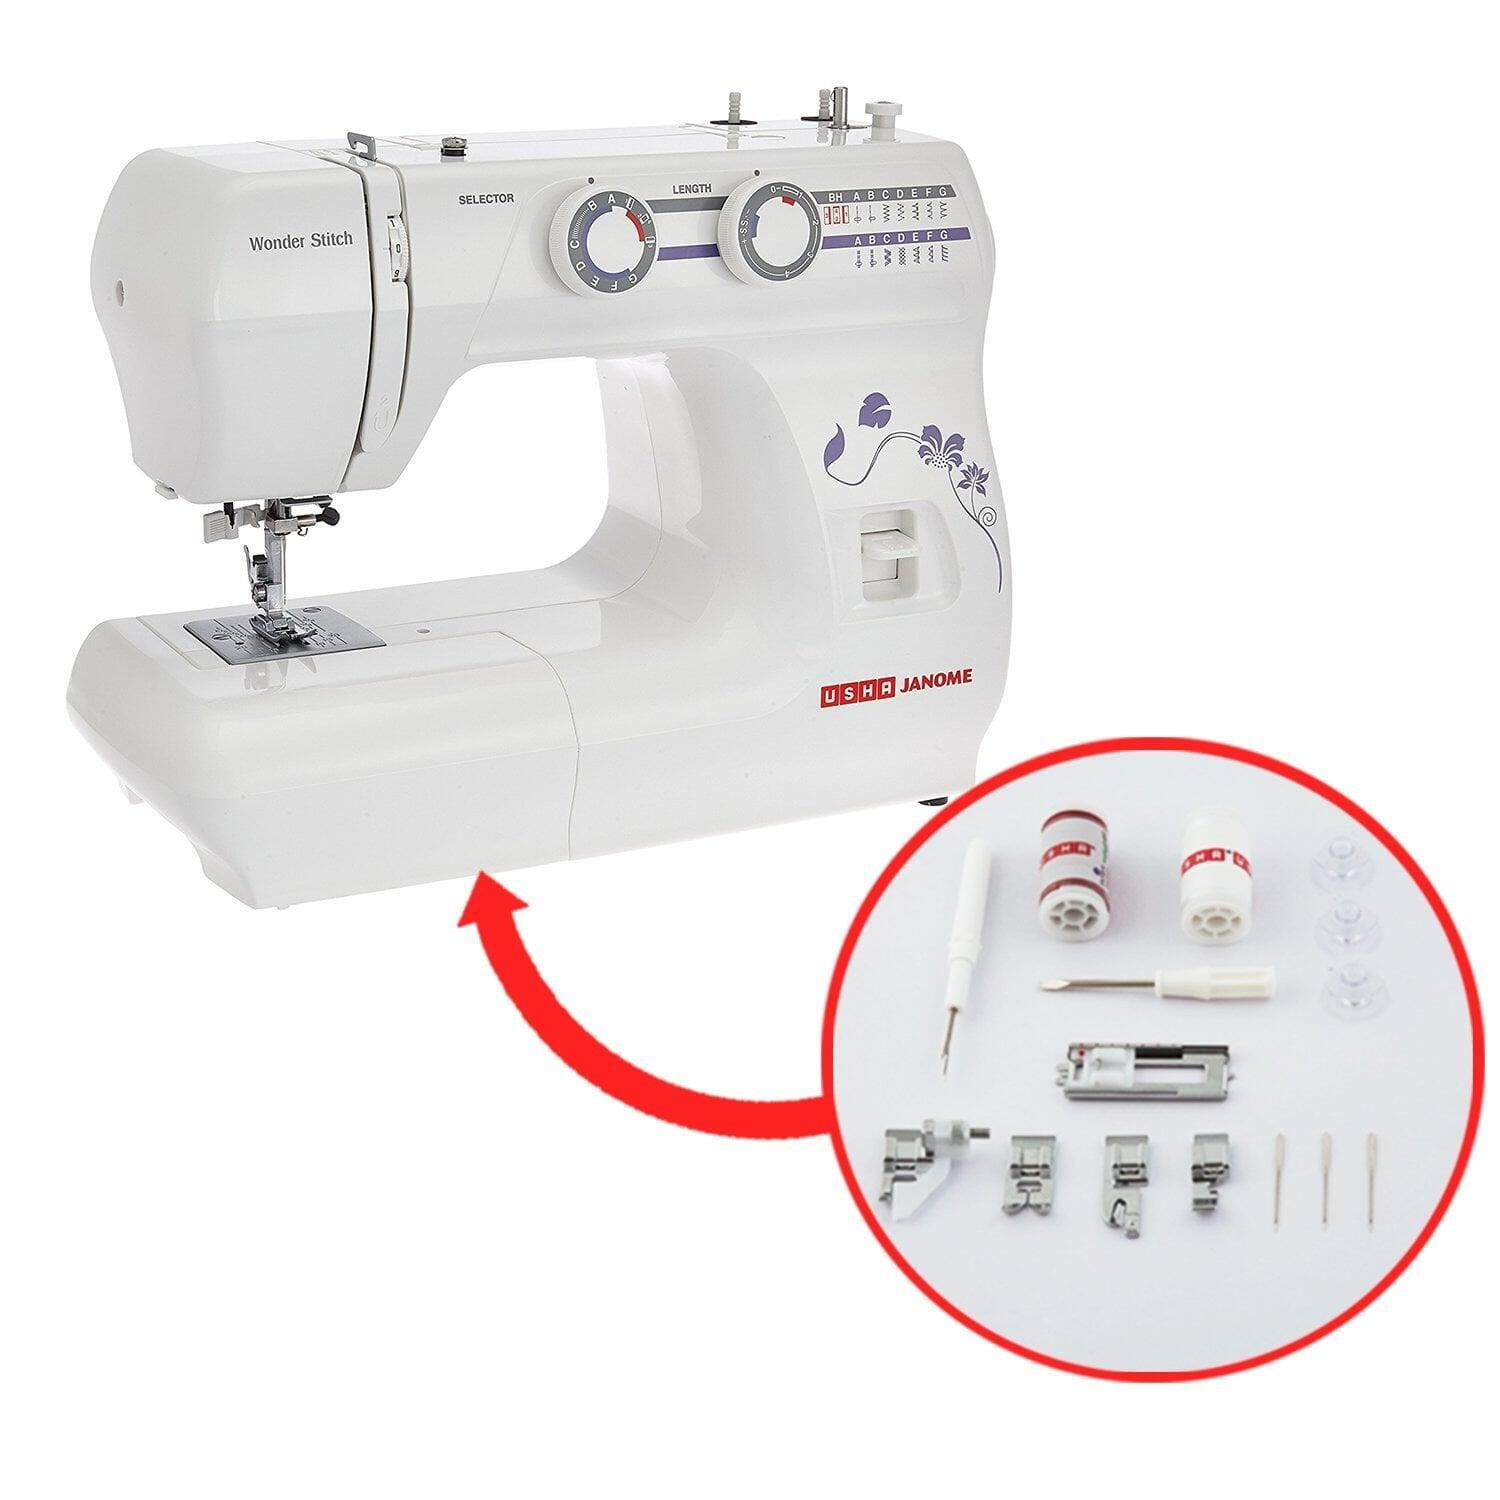 USHA Wonder Stitch Automatic Sewing Machine On Dillimall.Com